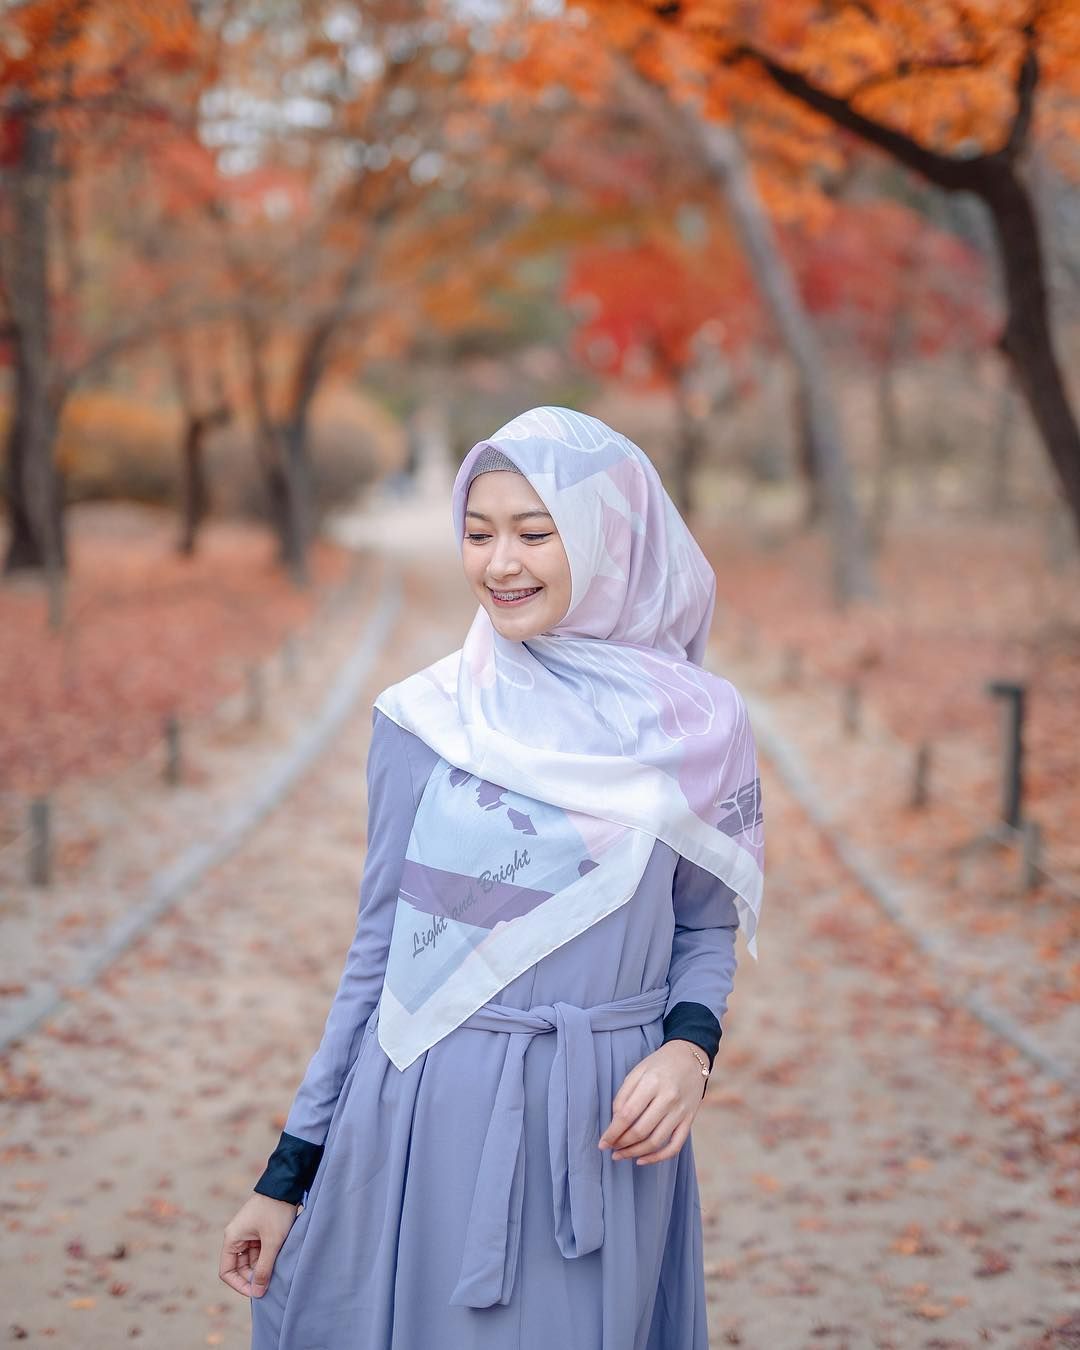 Tren Gaya Hijab 2019 Model Segi Empat Ala Selebgram Yang Bisa Kamu